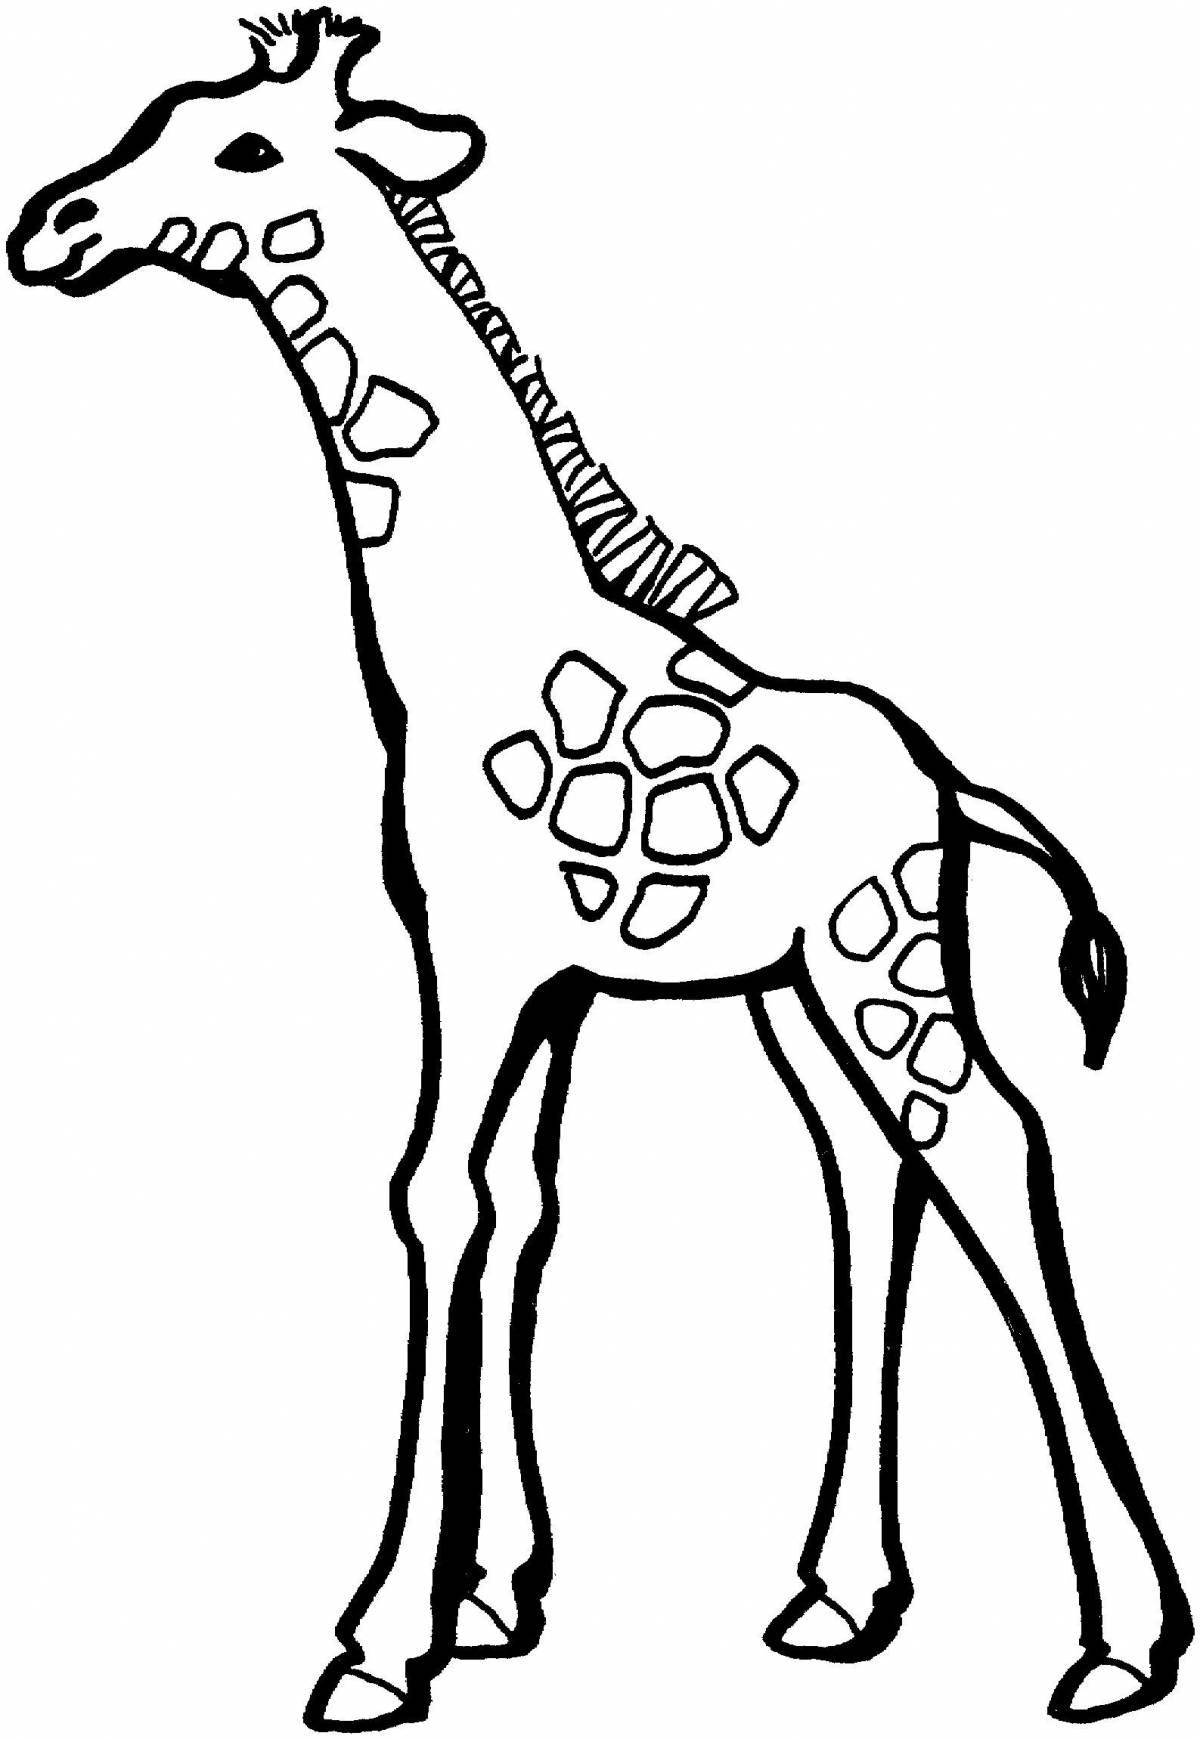 Glitter giraffe coloring page